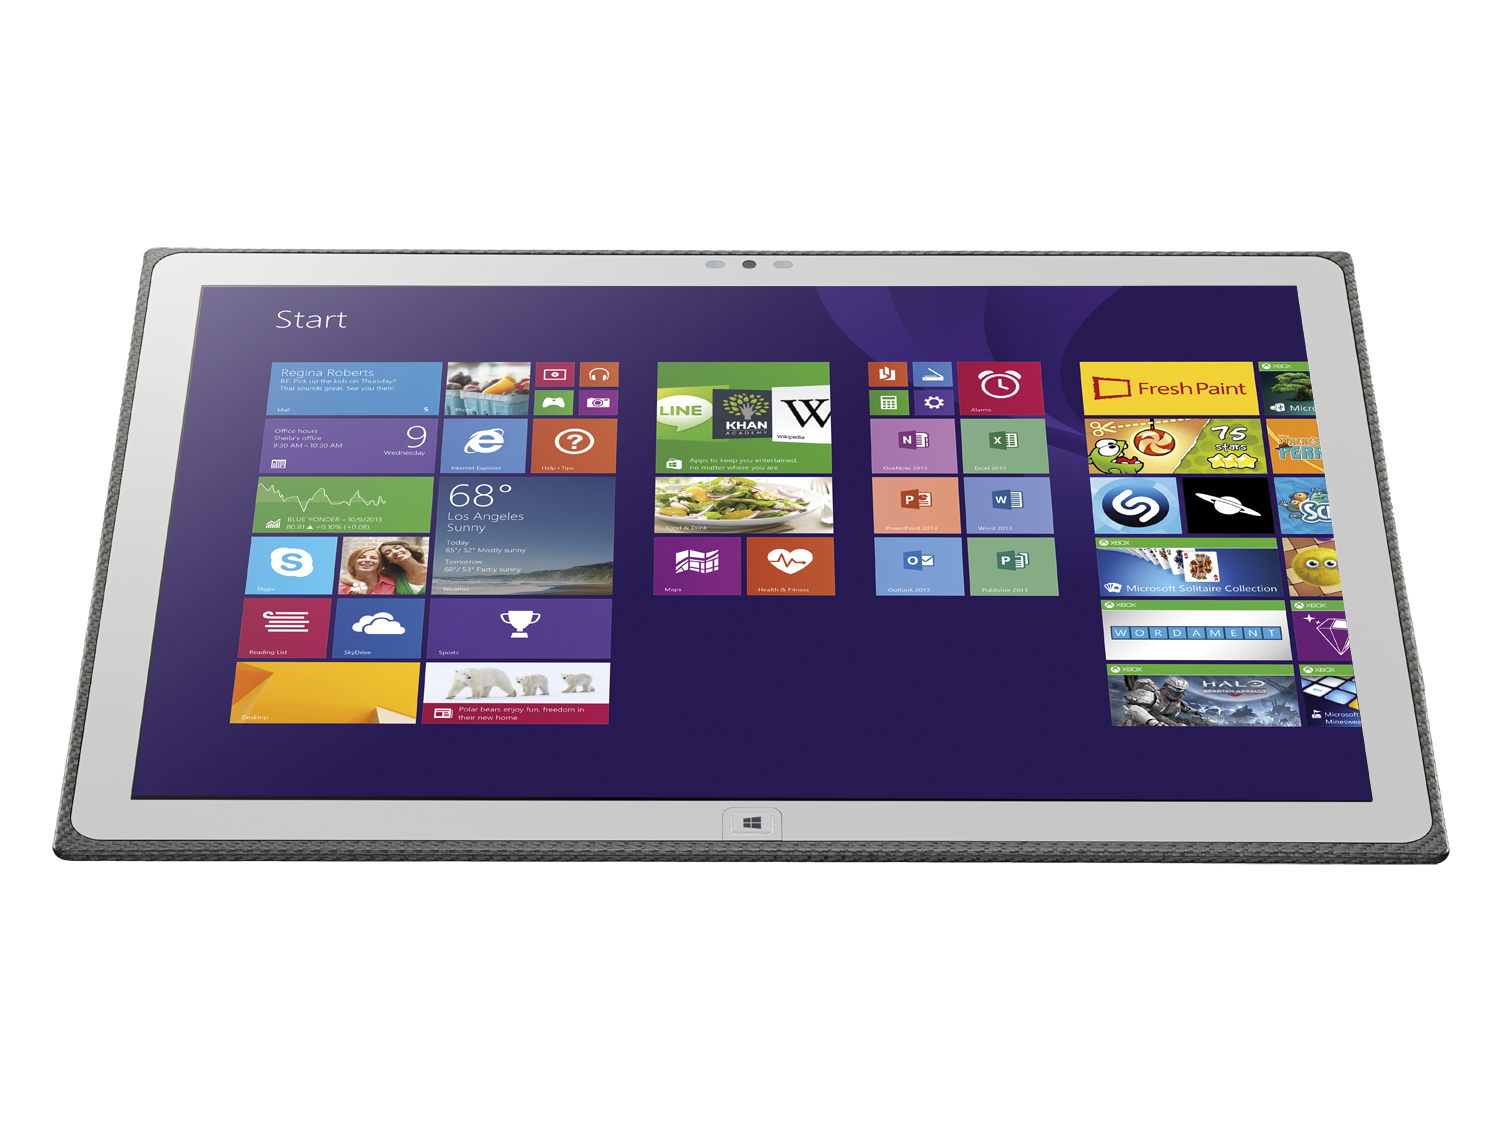 Immagine pubblicata in relazione al seguente contenuto: Panasonic lancia il tablet ToughPad 4K UT-MA6 con display 4K | Nome immagine: news20904_ToughPad-4K-UT-MA6_2.png